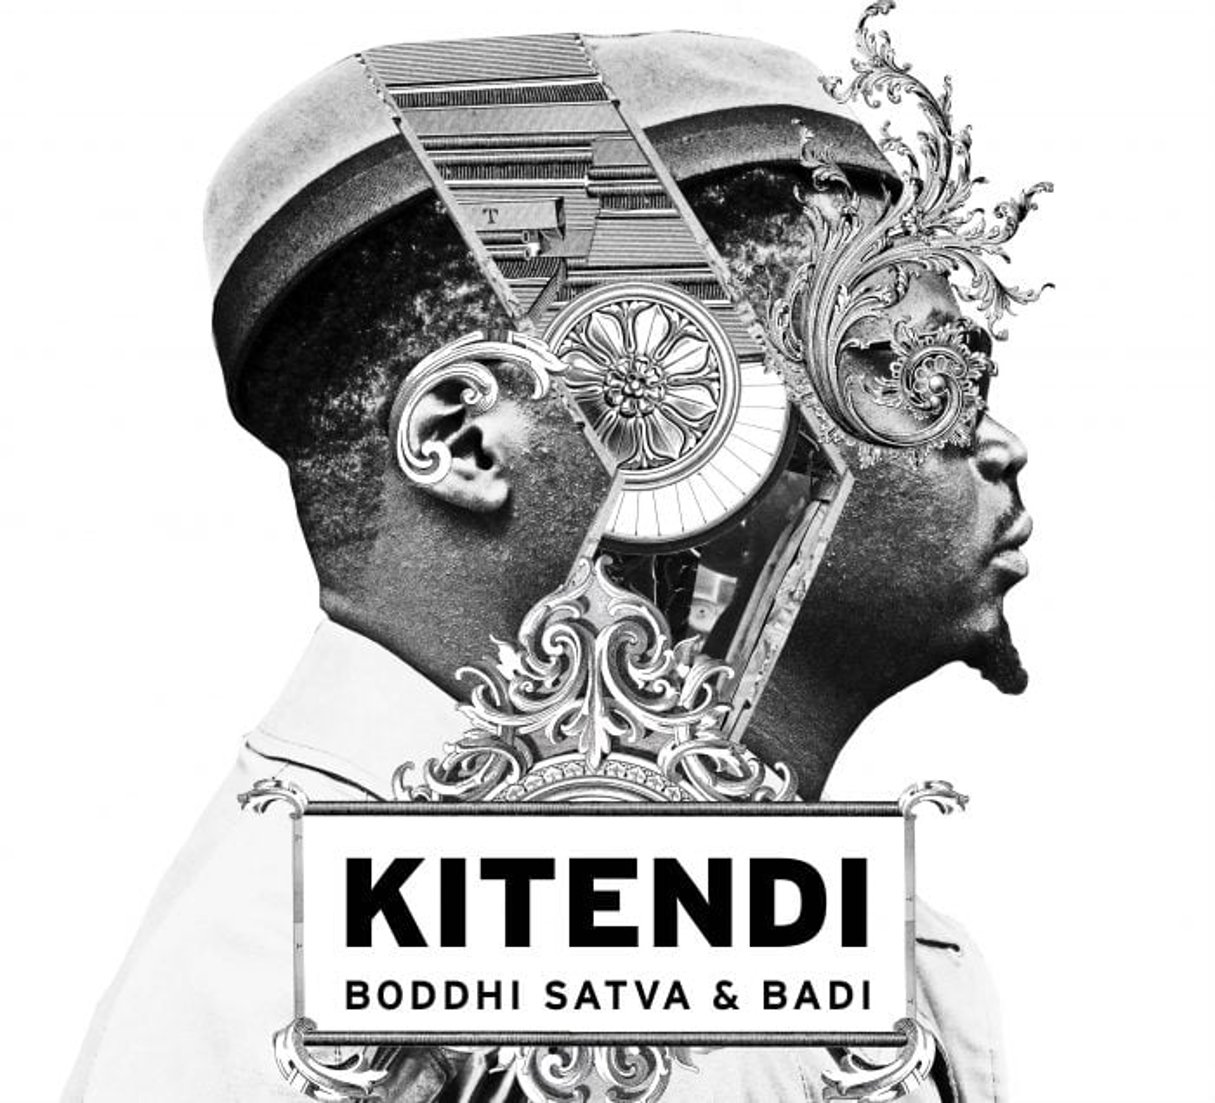 Le DJ centrafricain Boddhi Satva en collaboration avec le rappeur belgo-congolais Badi. © DR